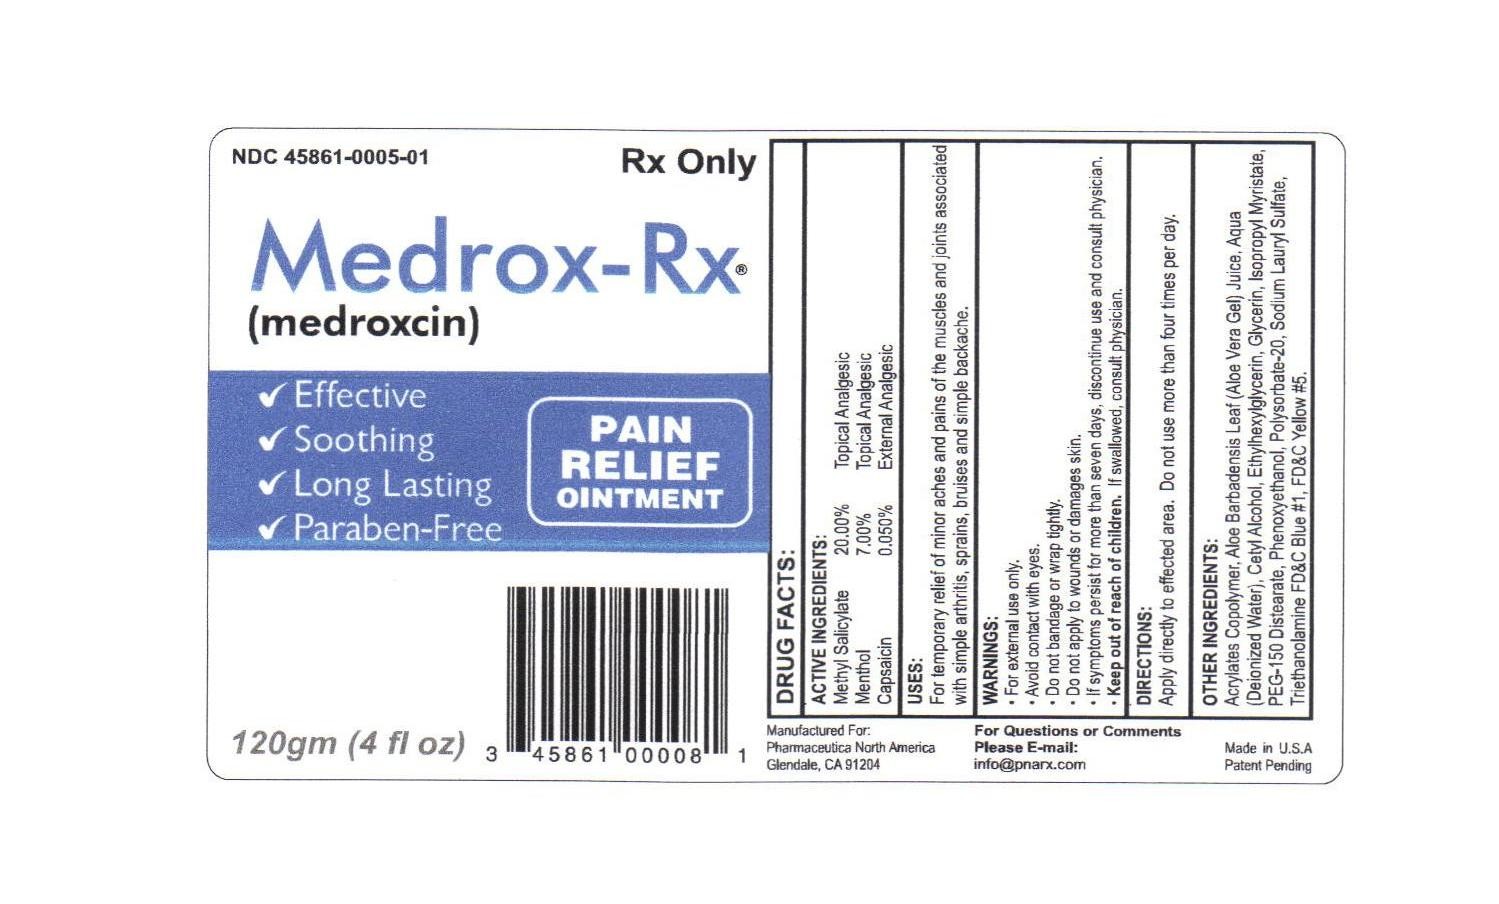 Medrox-Rx